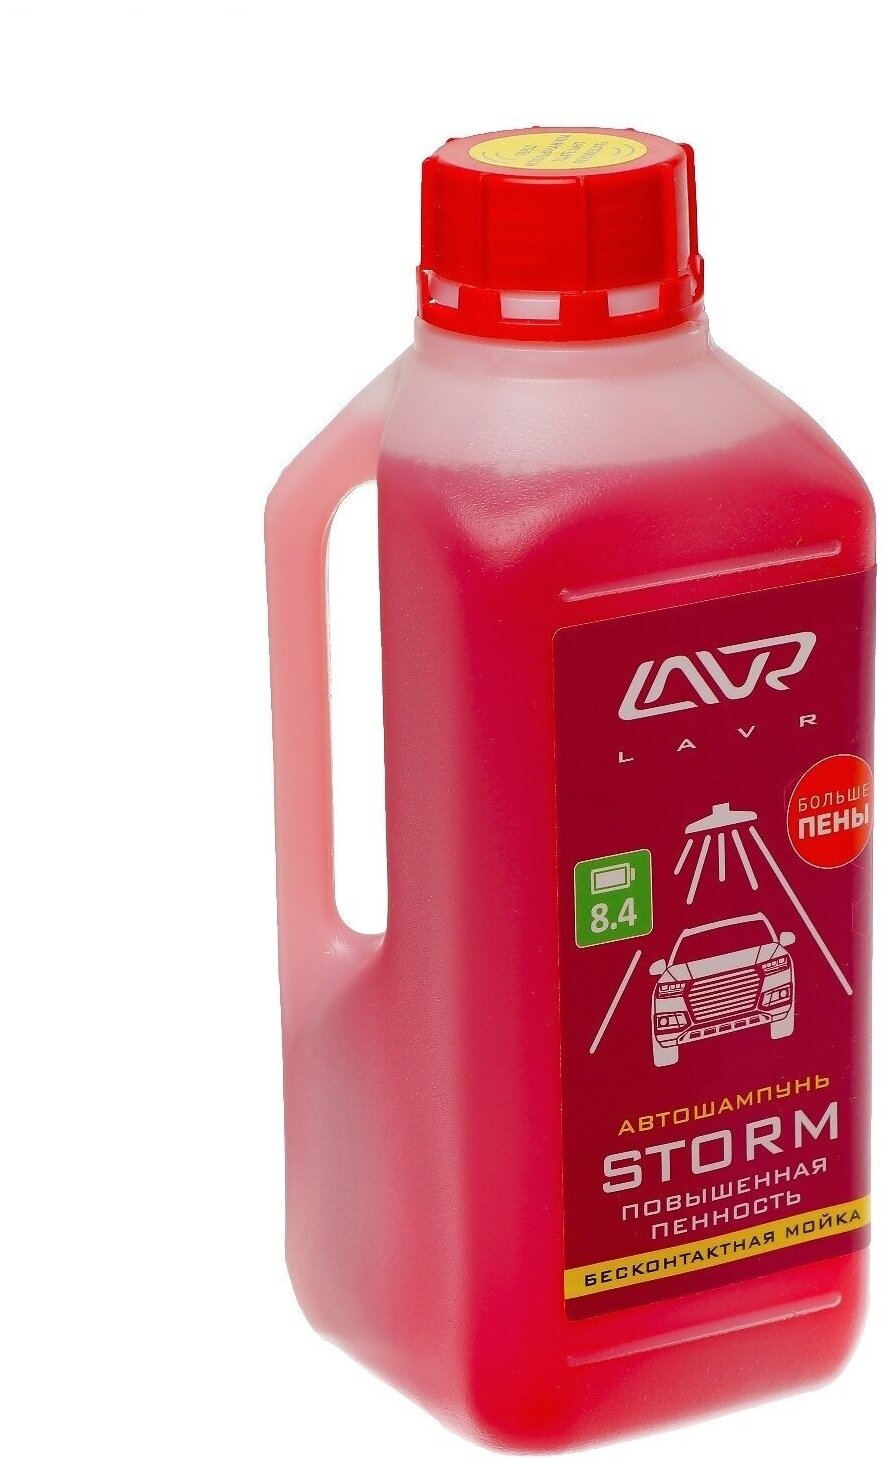 Автошампунь LAVR Storm бесконтакт, повышенная пенность 1:100, 1 л, бутылка Ln2336